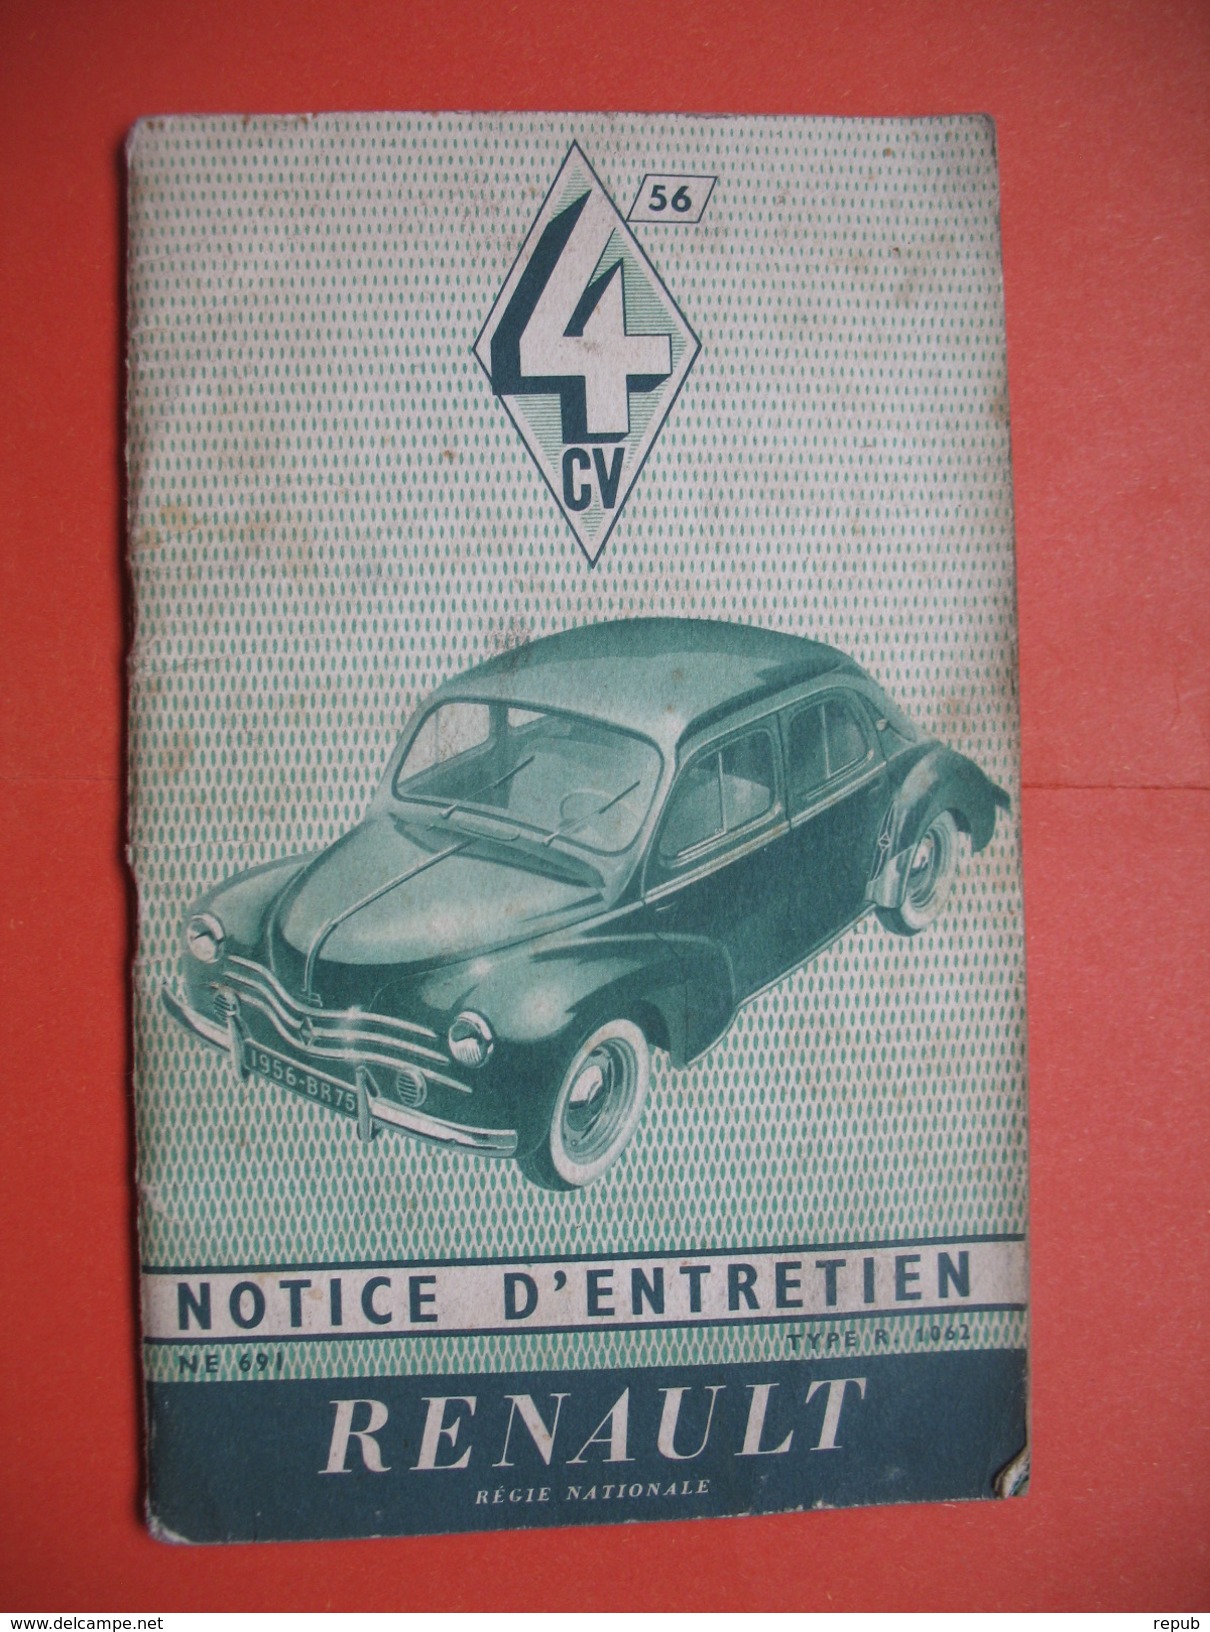 Notice D'entretien RENAULT 4 CV Août 1955 - Automobile